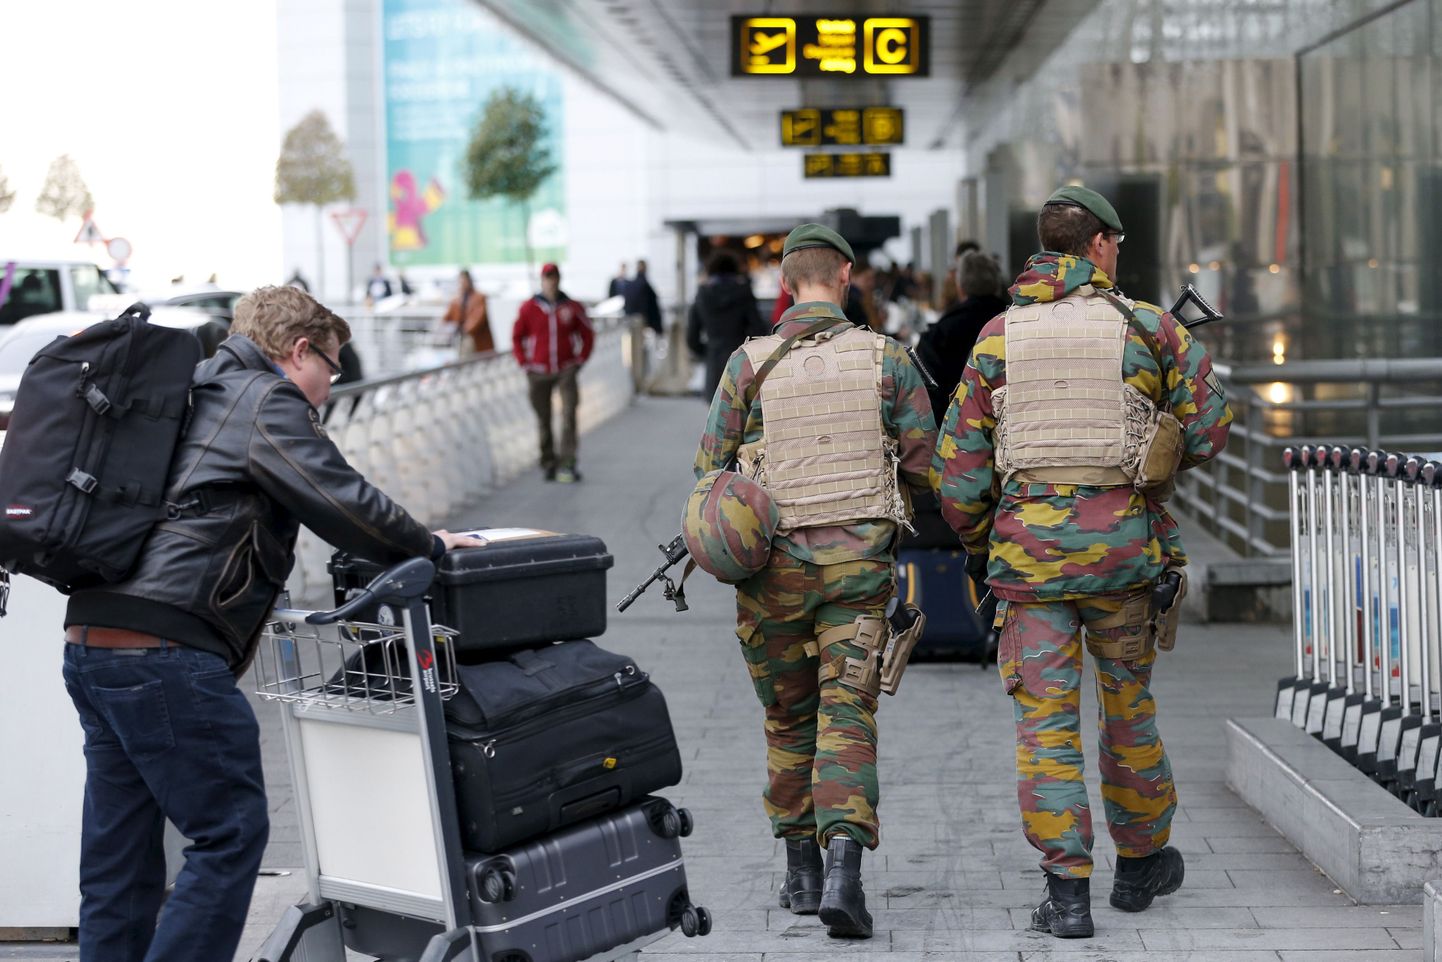 Kõrgendatud terrorismiohu tõttu on Brüsseli lennujaama julgestusjõude suurendatud.